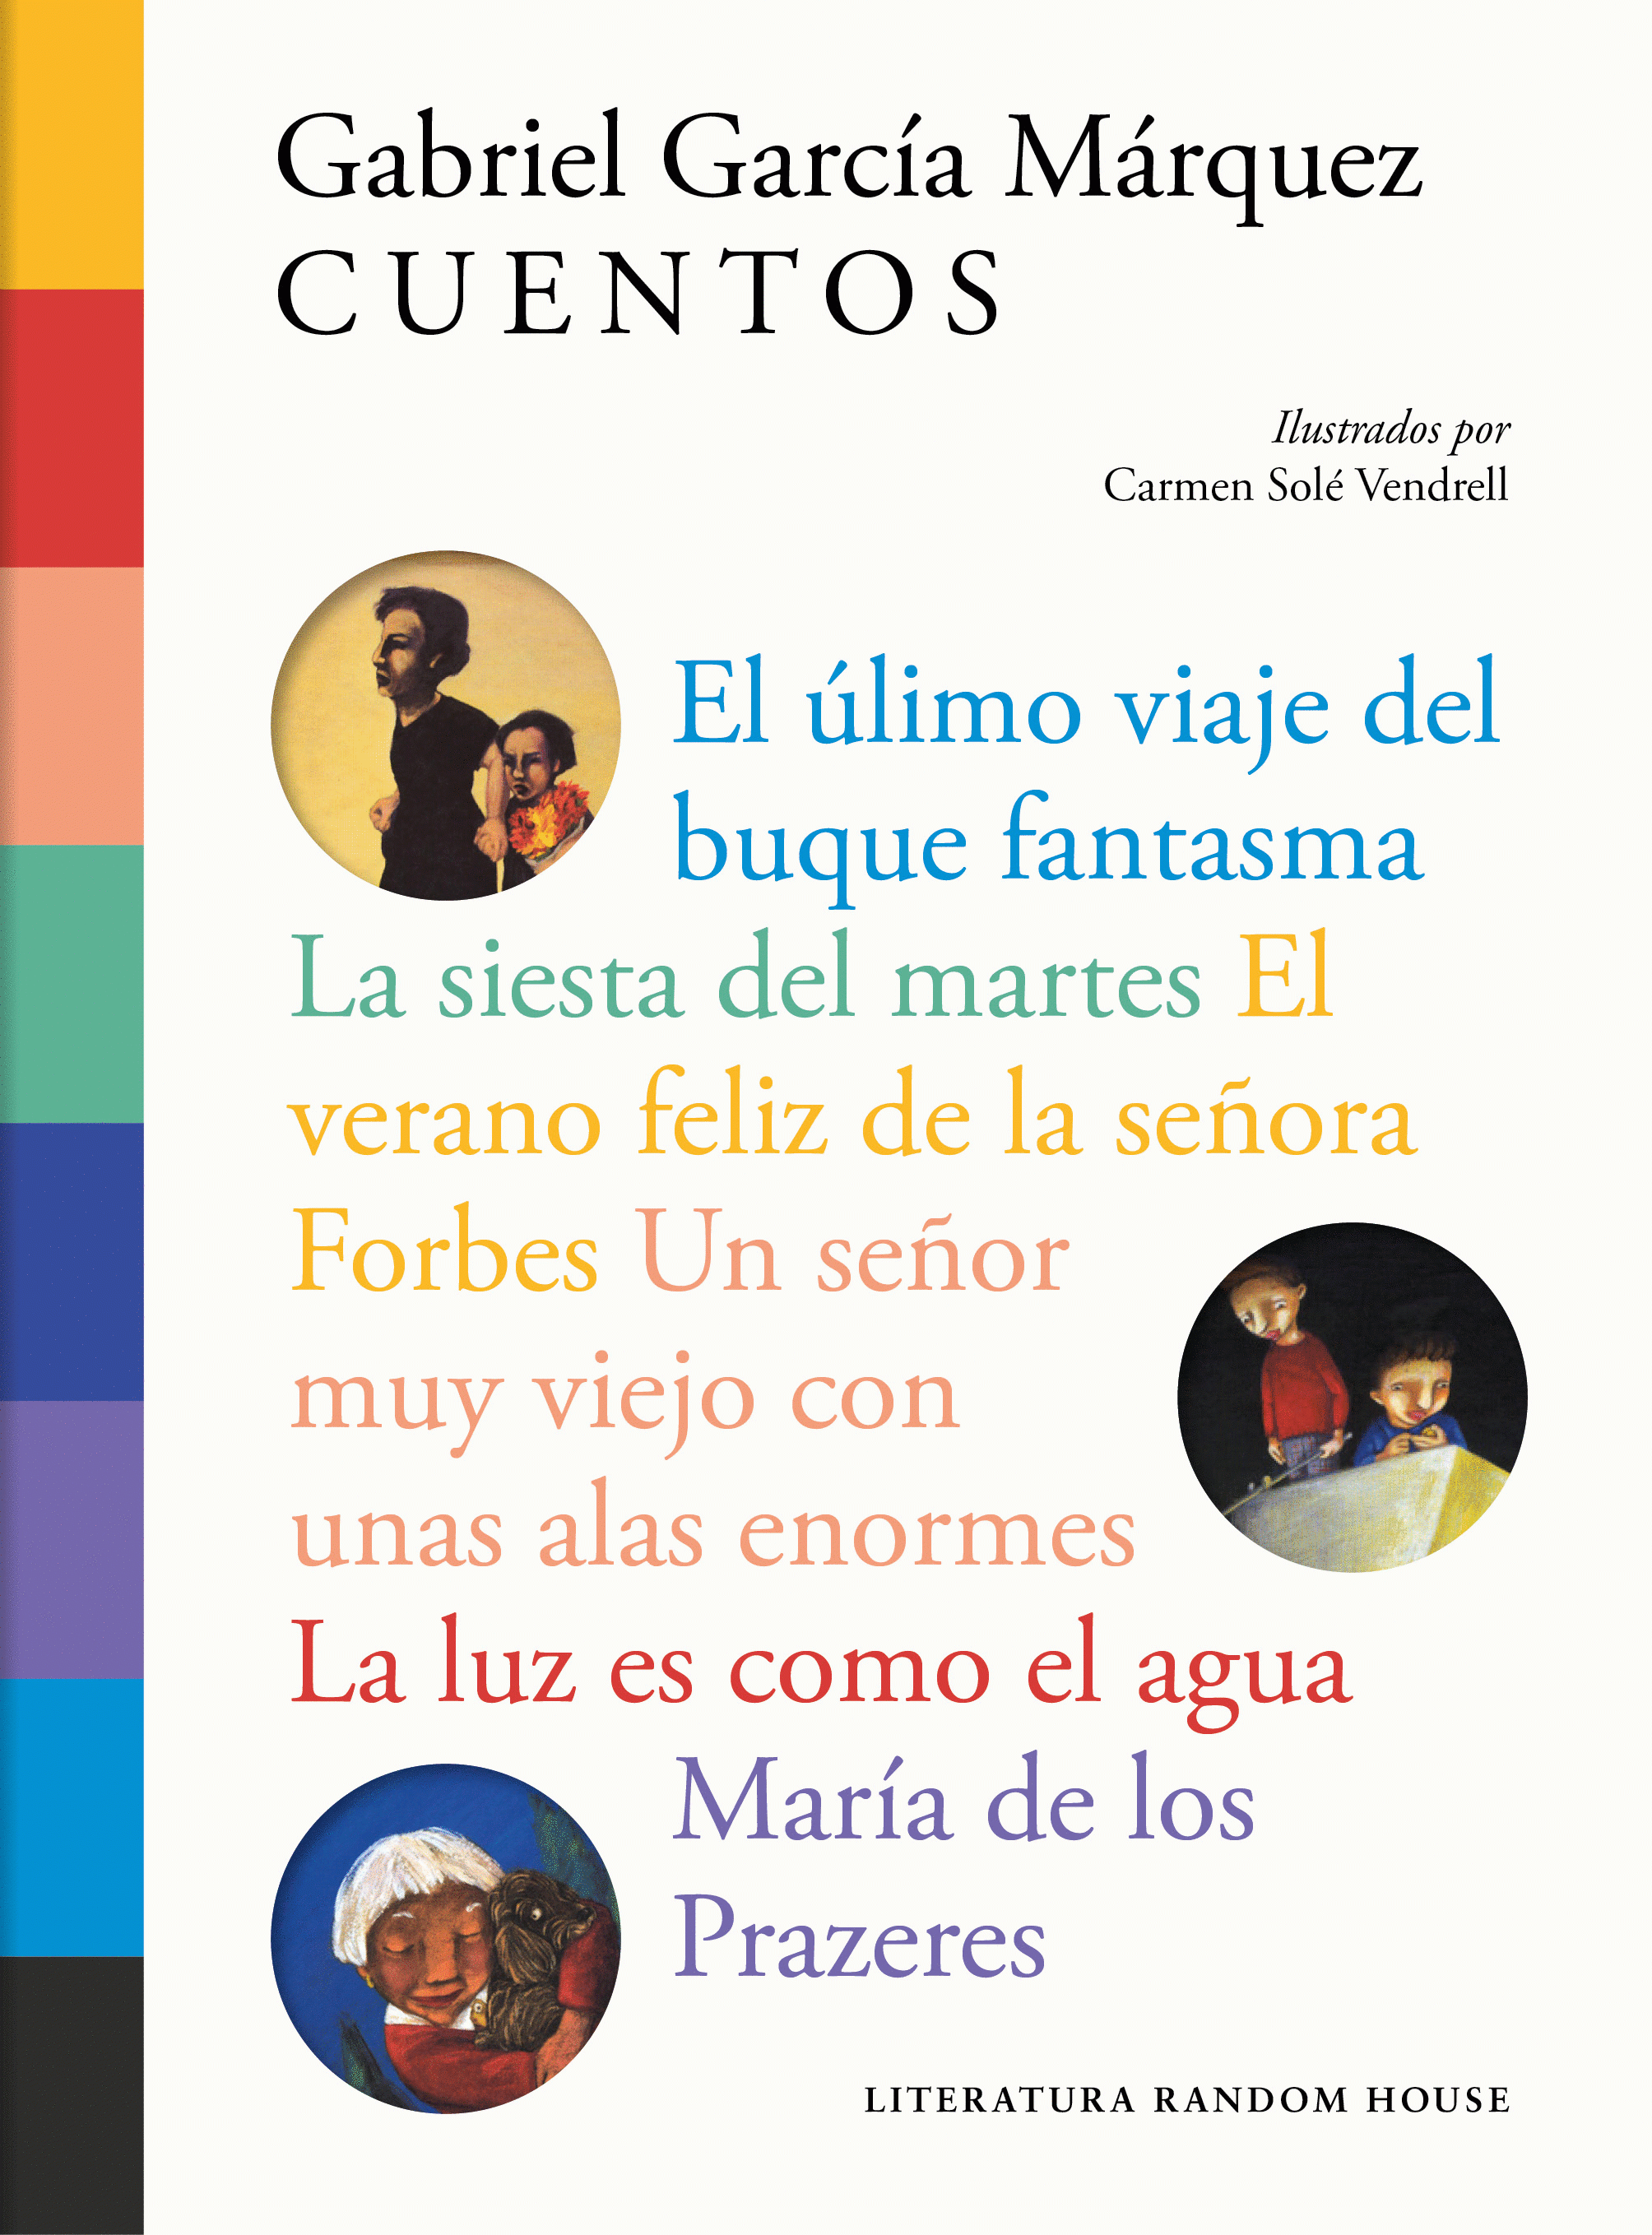 Imagen Cuentos Ilustrados. Gabriel García Márquez 1